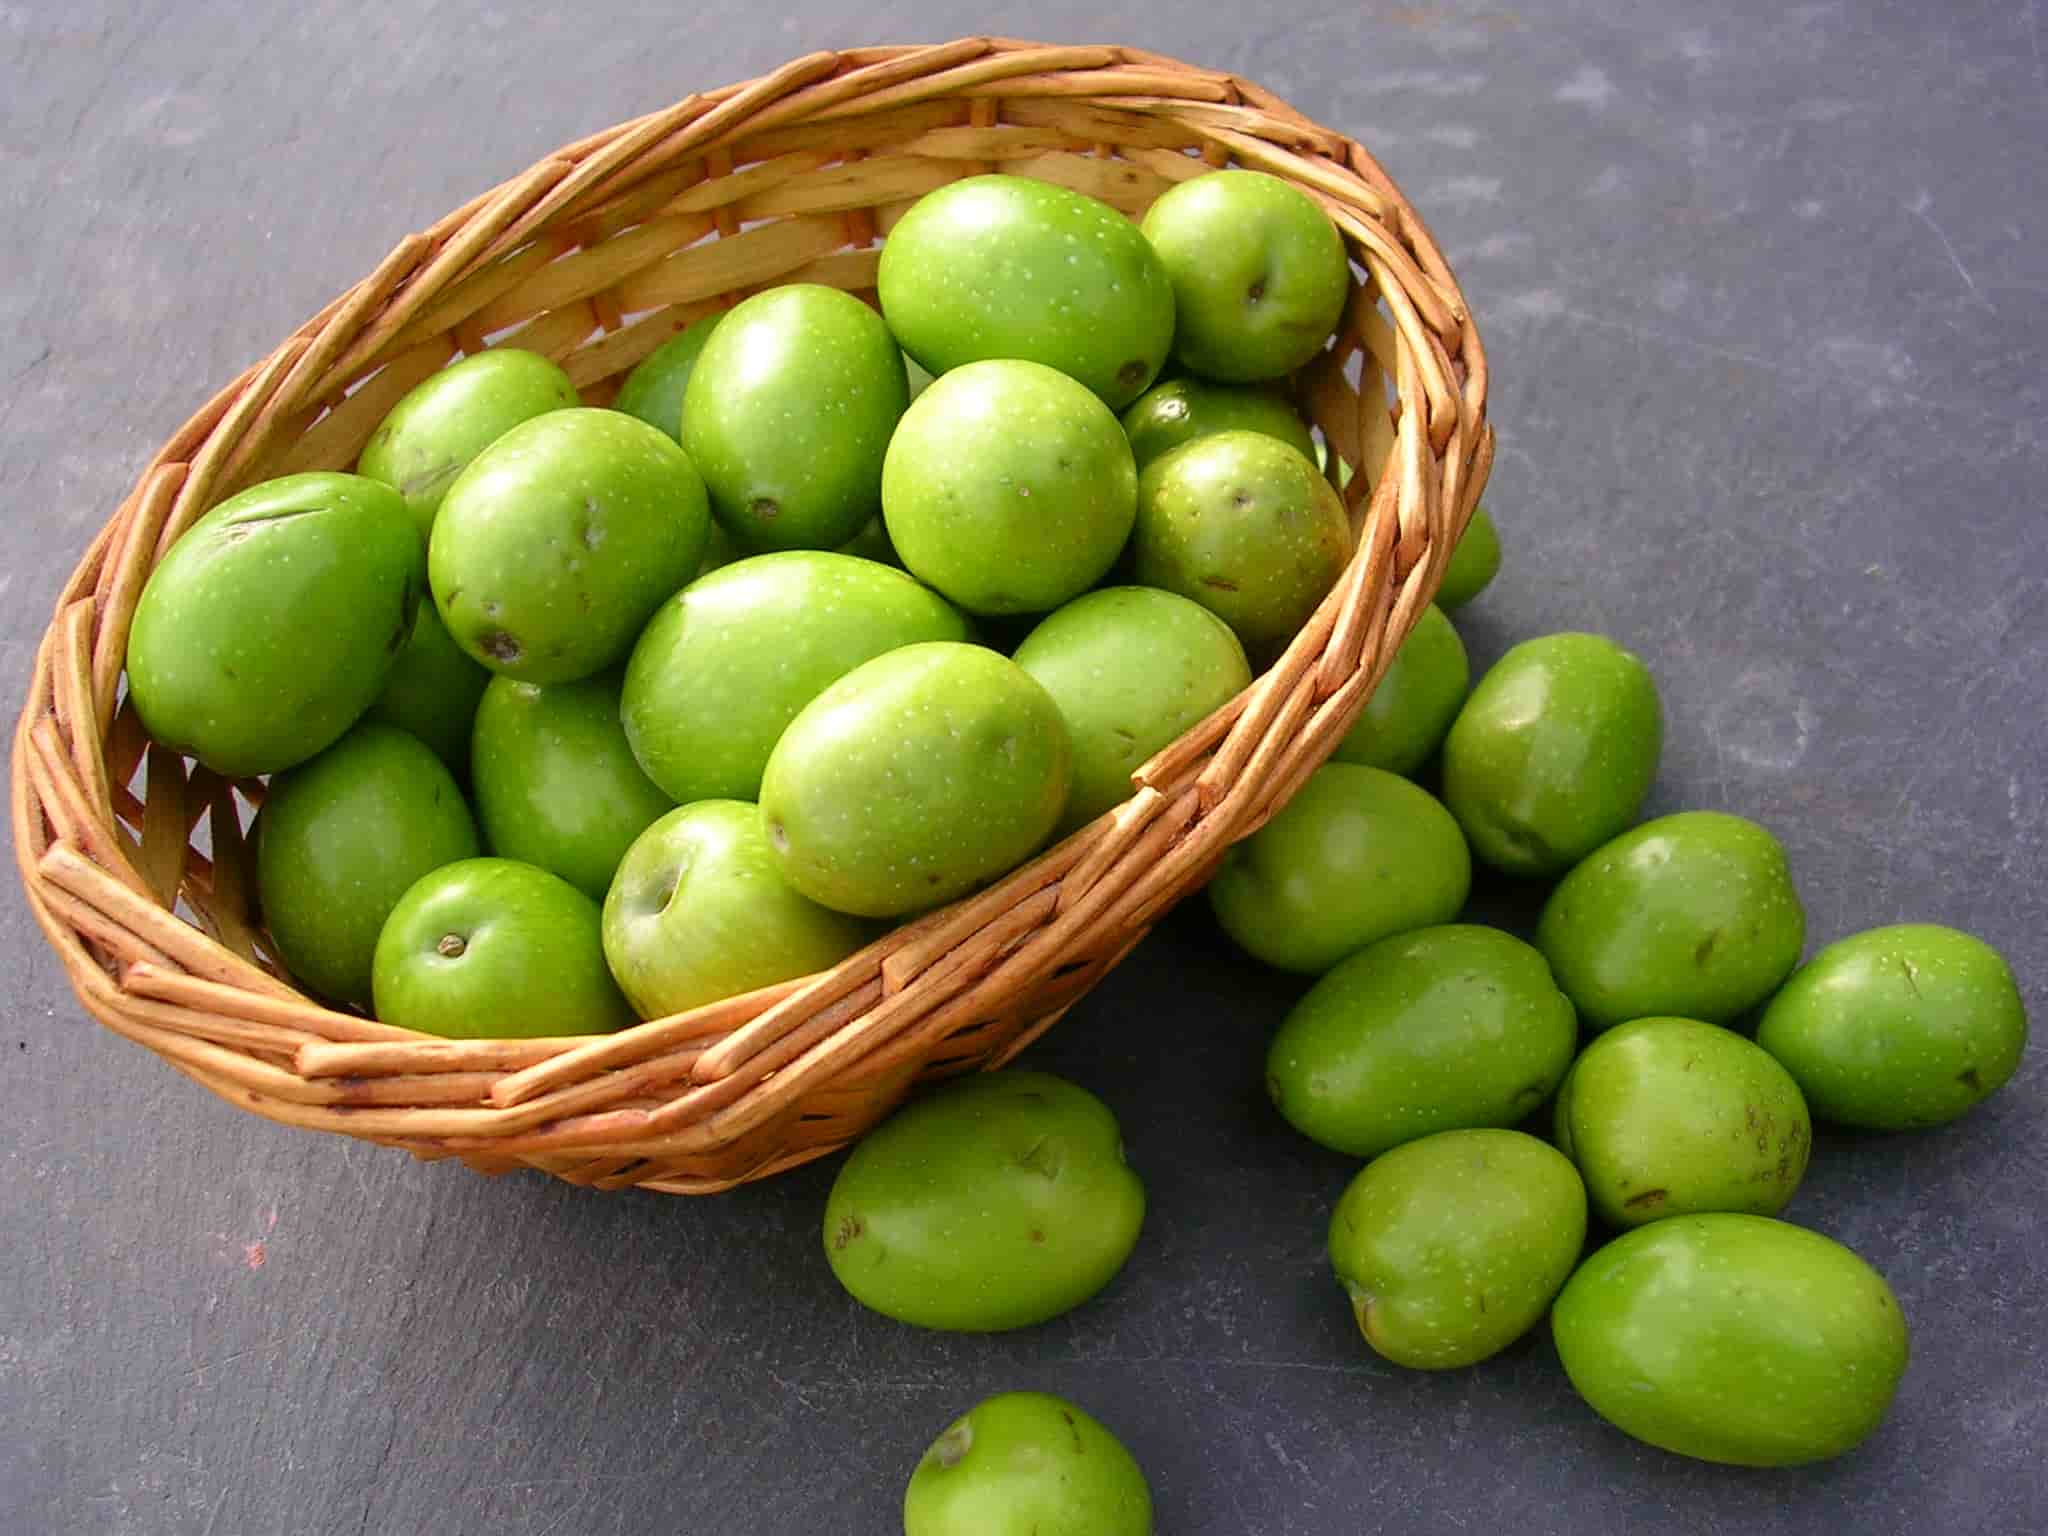 زيتون كالاماتا أخضر؛ اصله ياباني متوفر بكميات كبيرة Olive